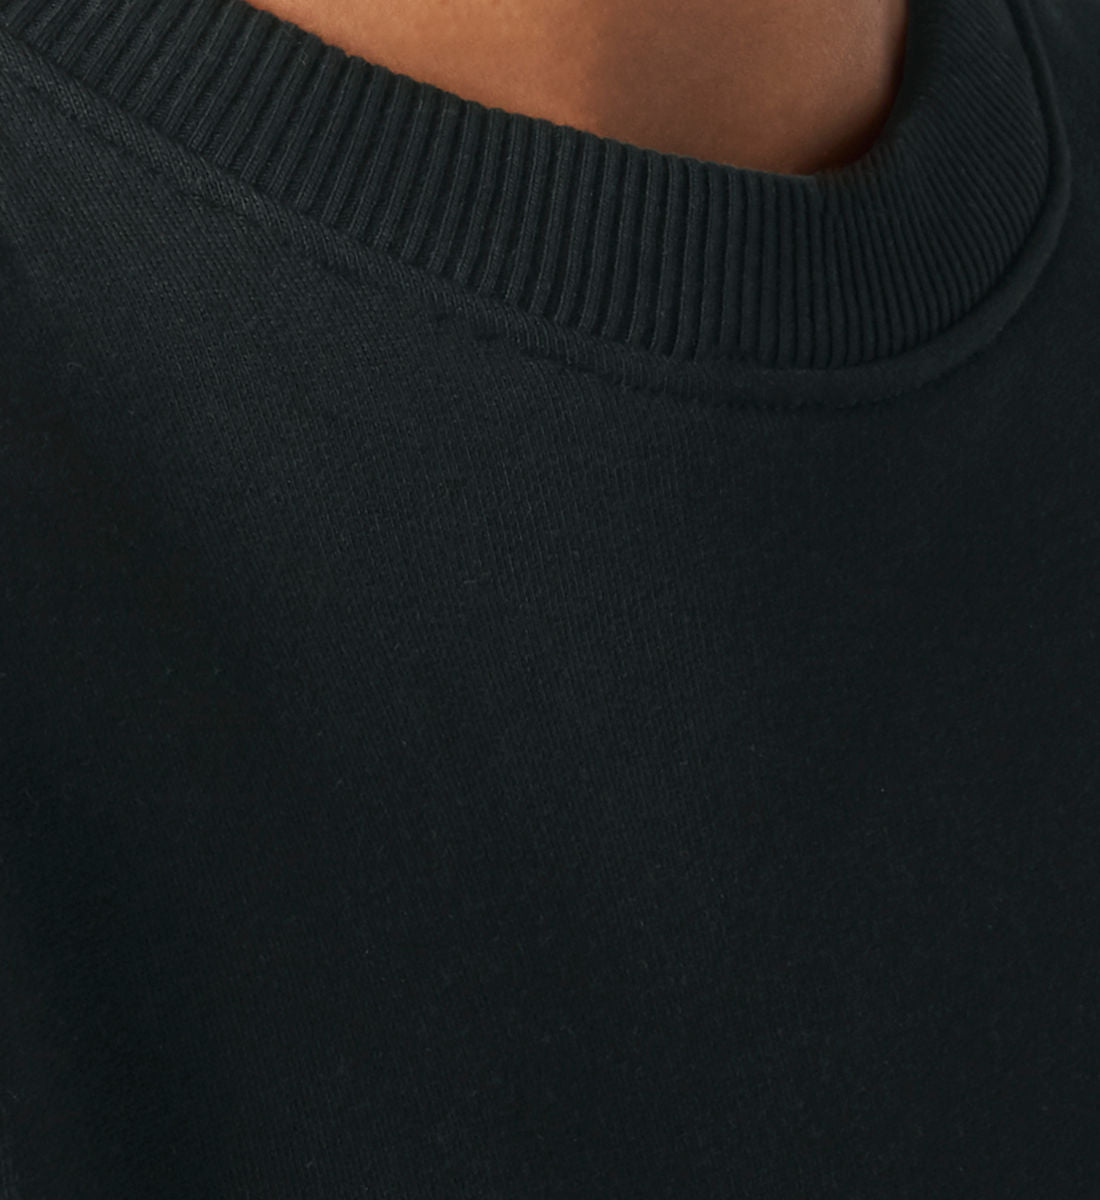 Schwarzes Sweatshirt Unisex für Frauen und Männer bedruckt mit dem Design der Roger Rockawoo Kollektion Guitar need for speed